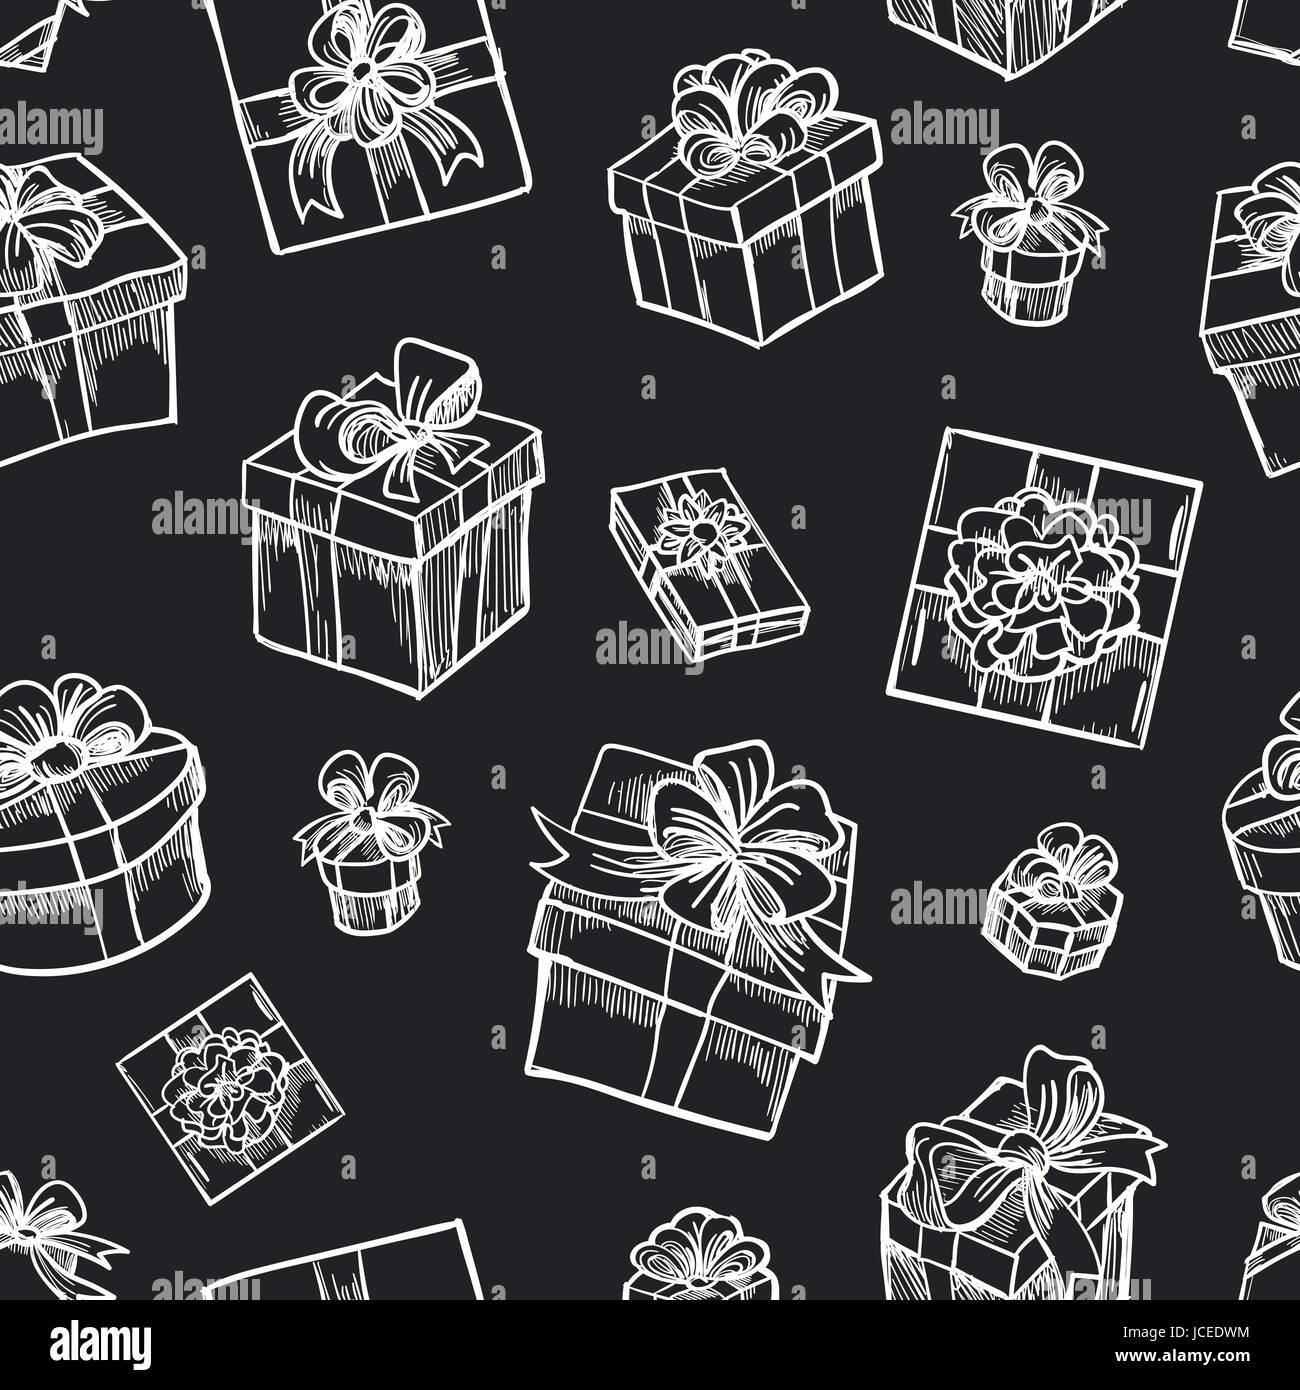 Vector disegnati a mano scatola regalo seamless pattern. Schizzo regali di Natale sfondo nero per il design attuale Illustrazione Vettoriale